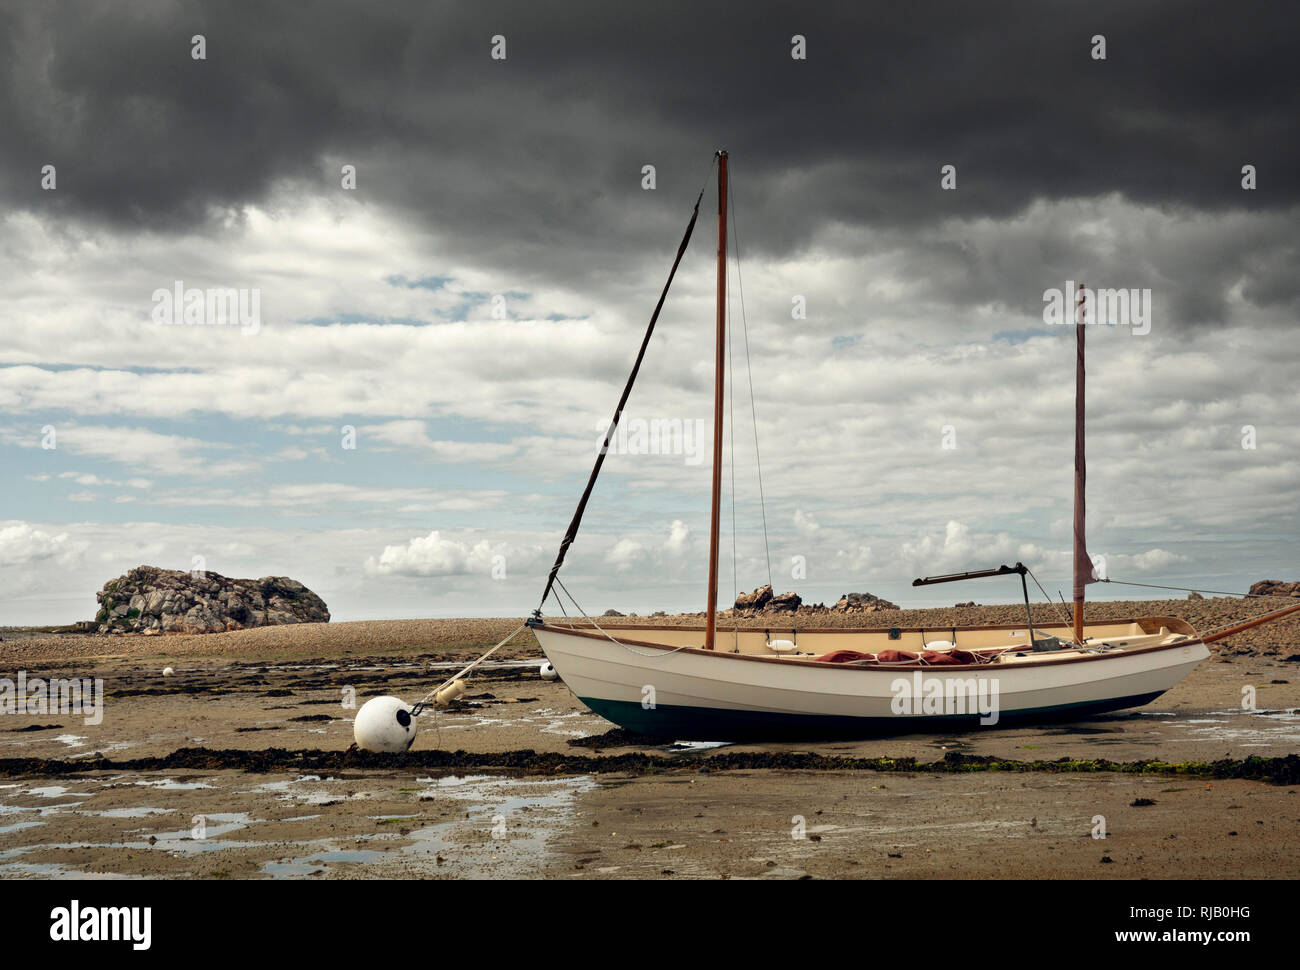 Durch die ebbe trocken gelegtes Segelboot in der Bretagne Foto Stock